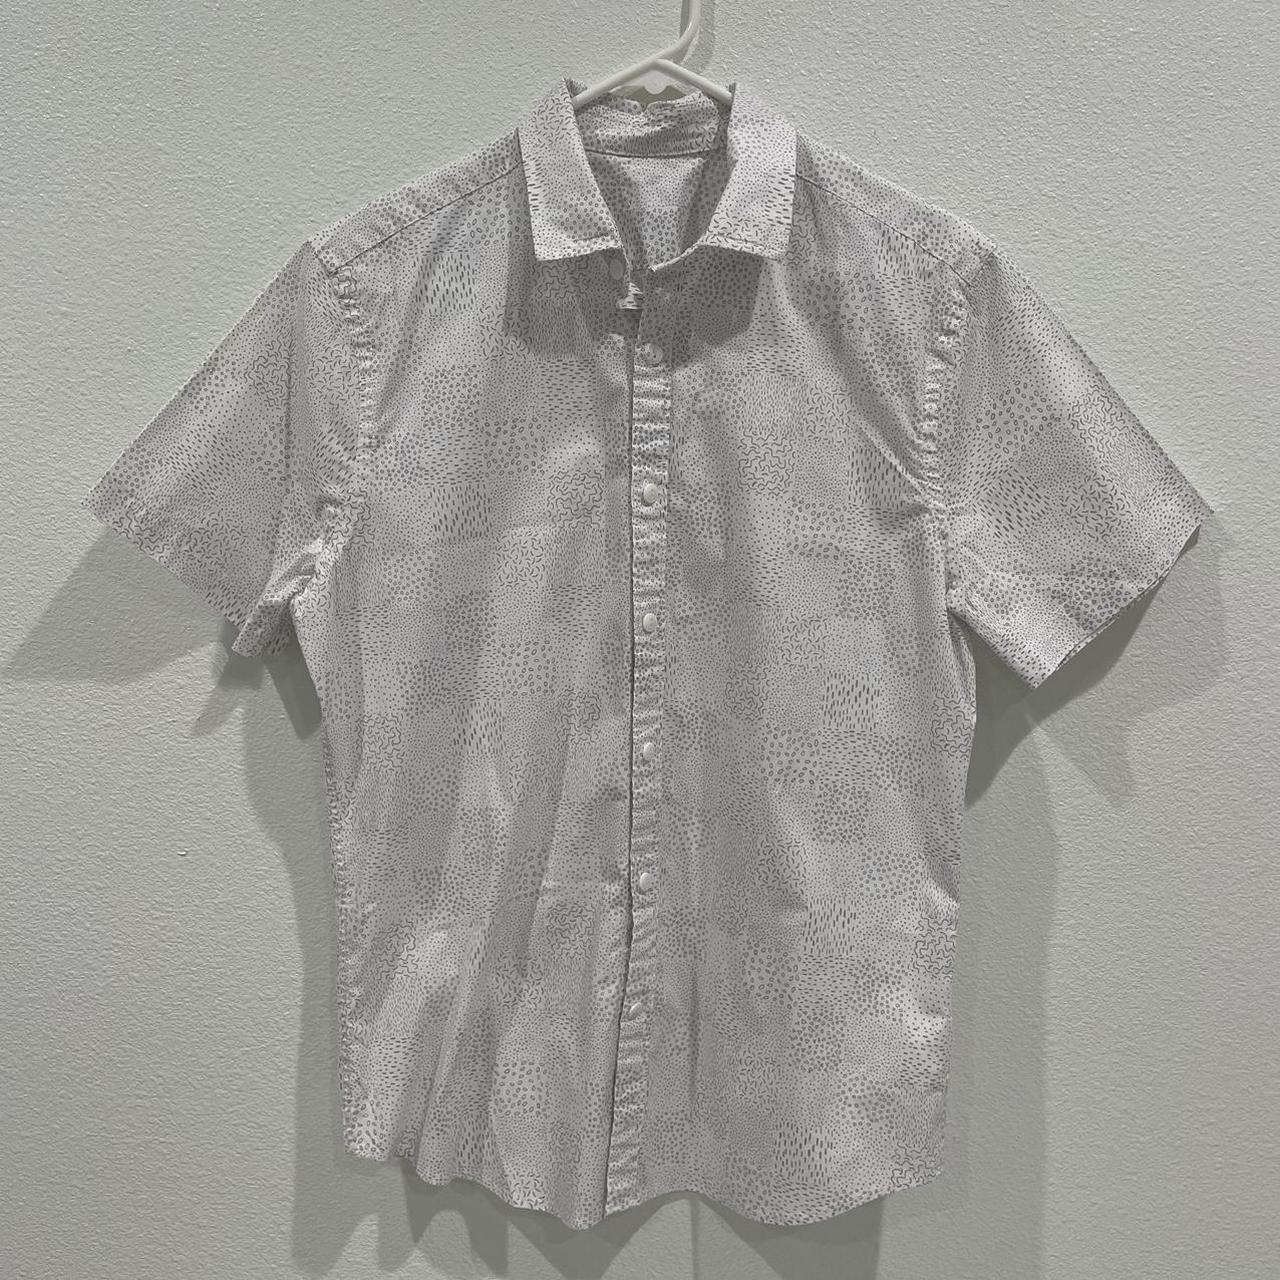 Patterned Short Sleeve Button Up Shirt - Never... - Depop